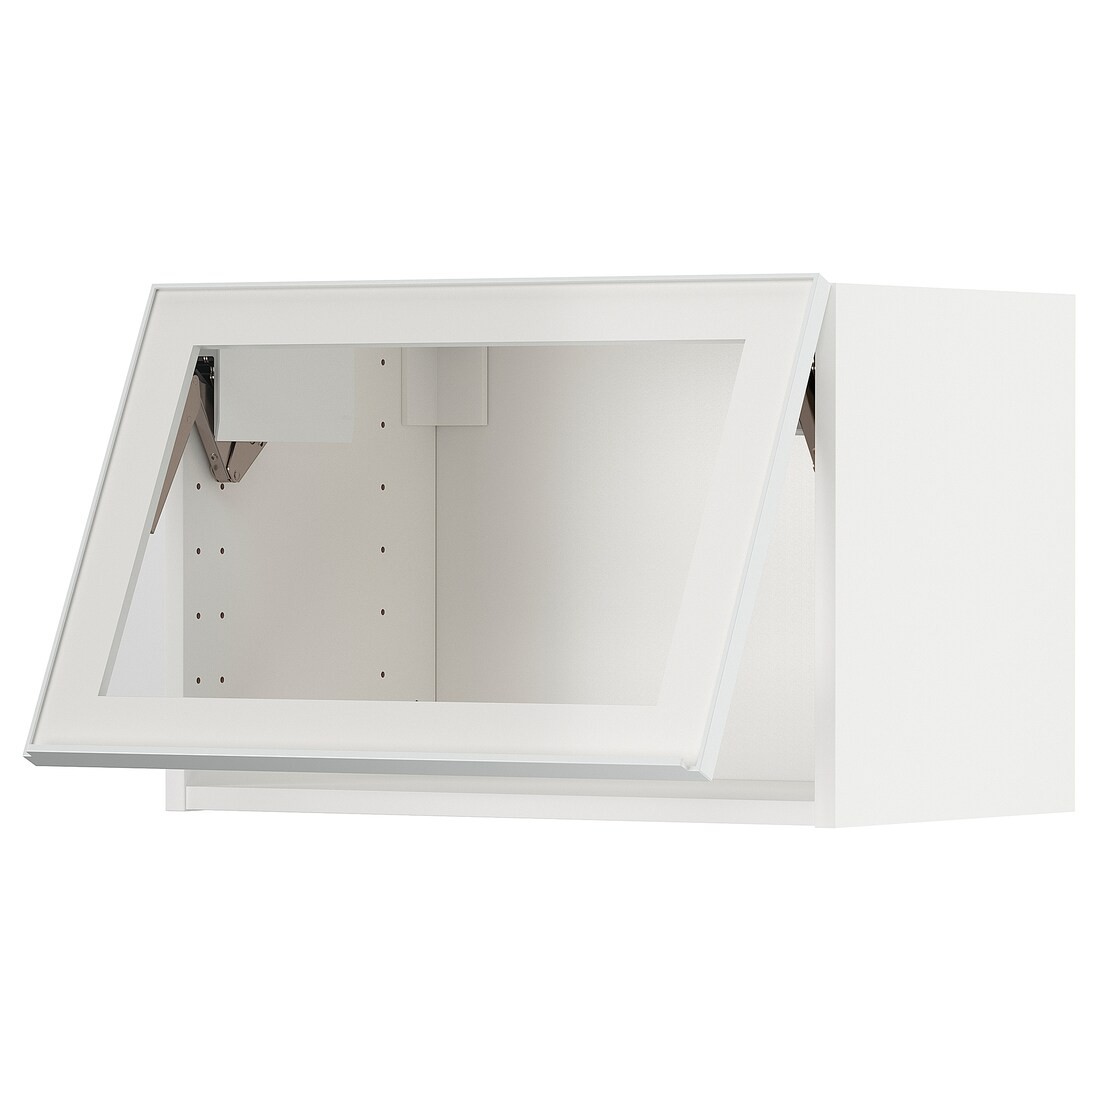 IKEA METOD МЕТОД Навесной горизонтальный шкаф, белый / Hesta белое прозрачное стекло, 60x40 см 19490579 194.905.79